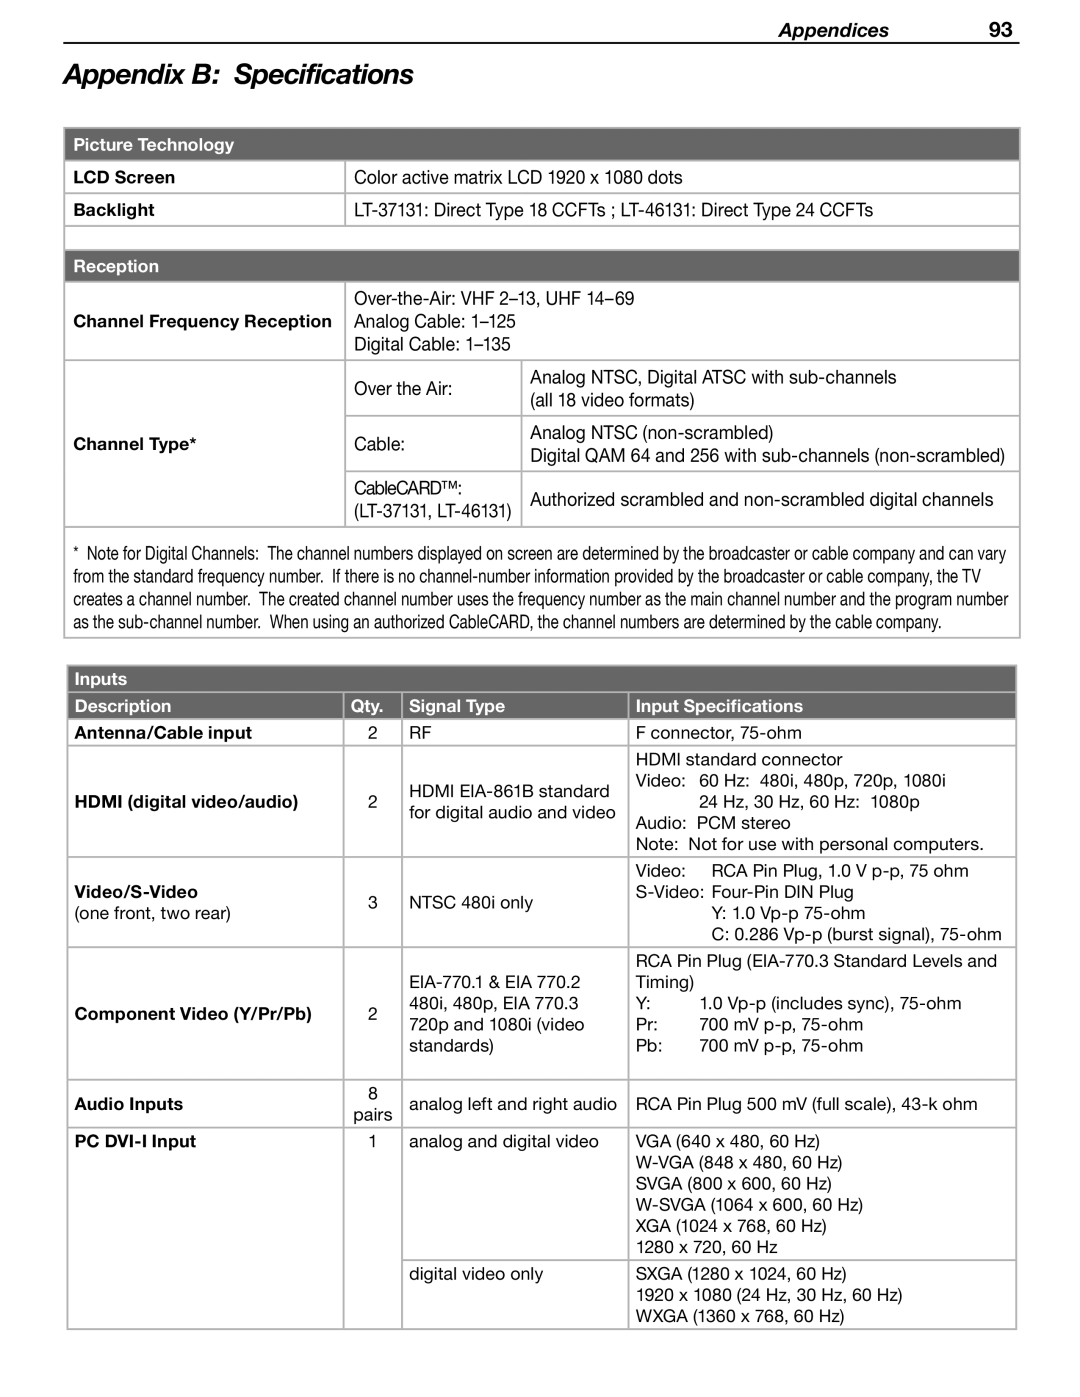 Mitsubishi Electronics LT-37131 manual Appendix B Specifications, Appendices 